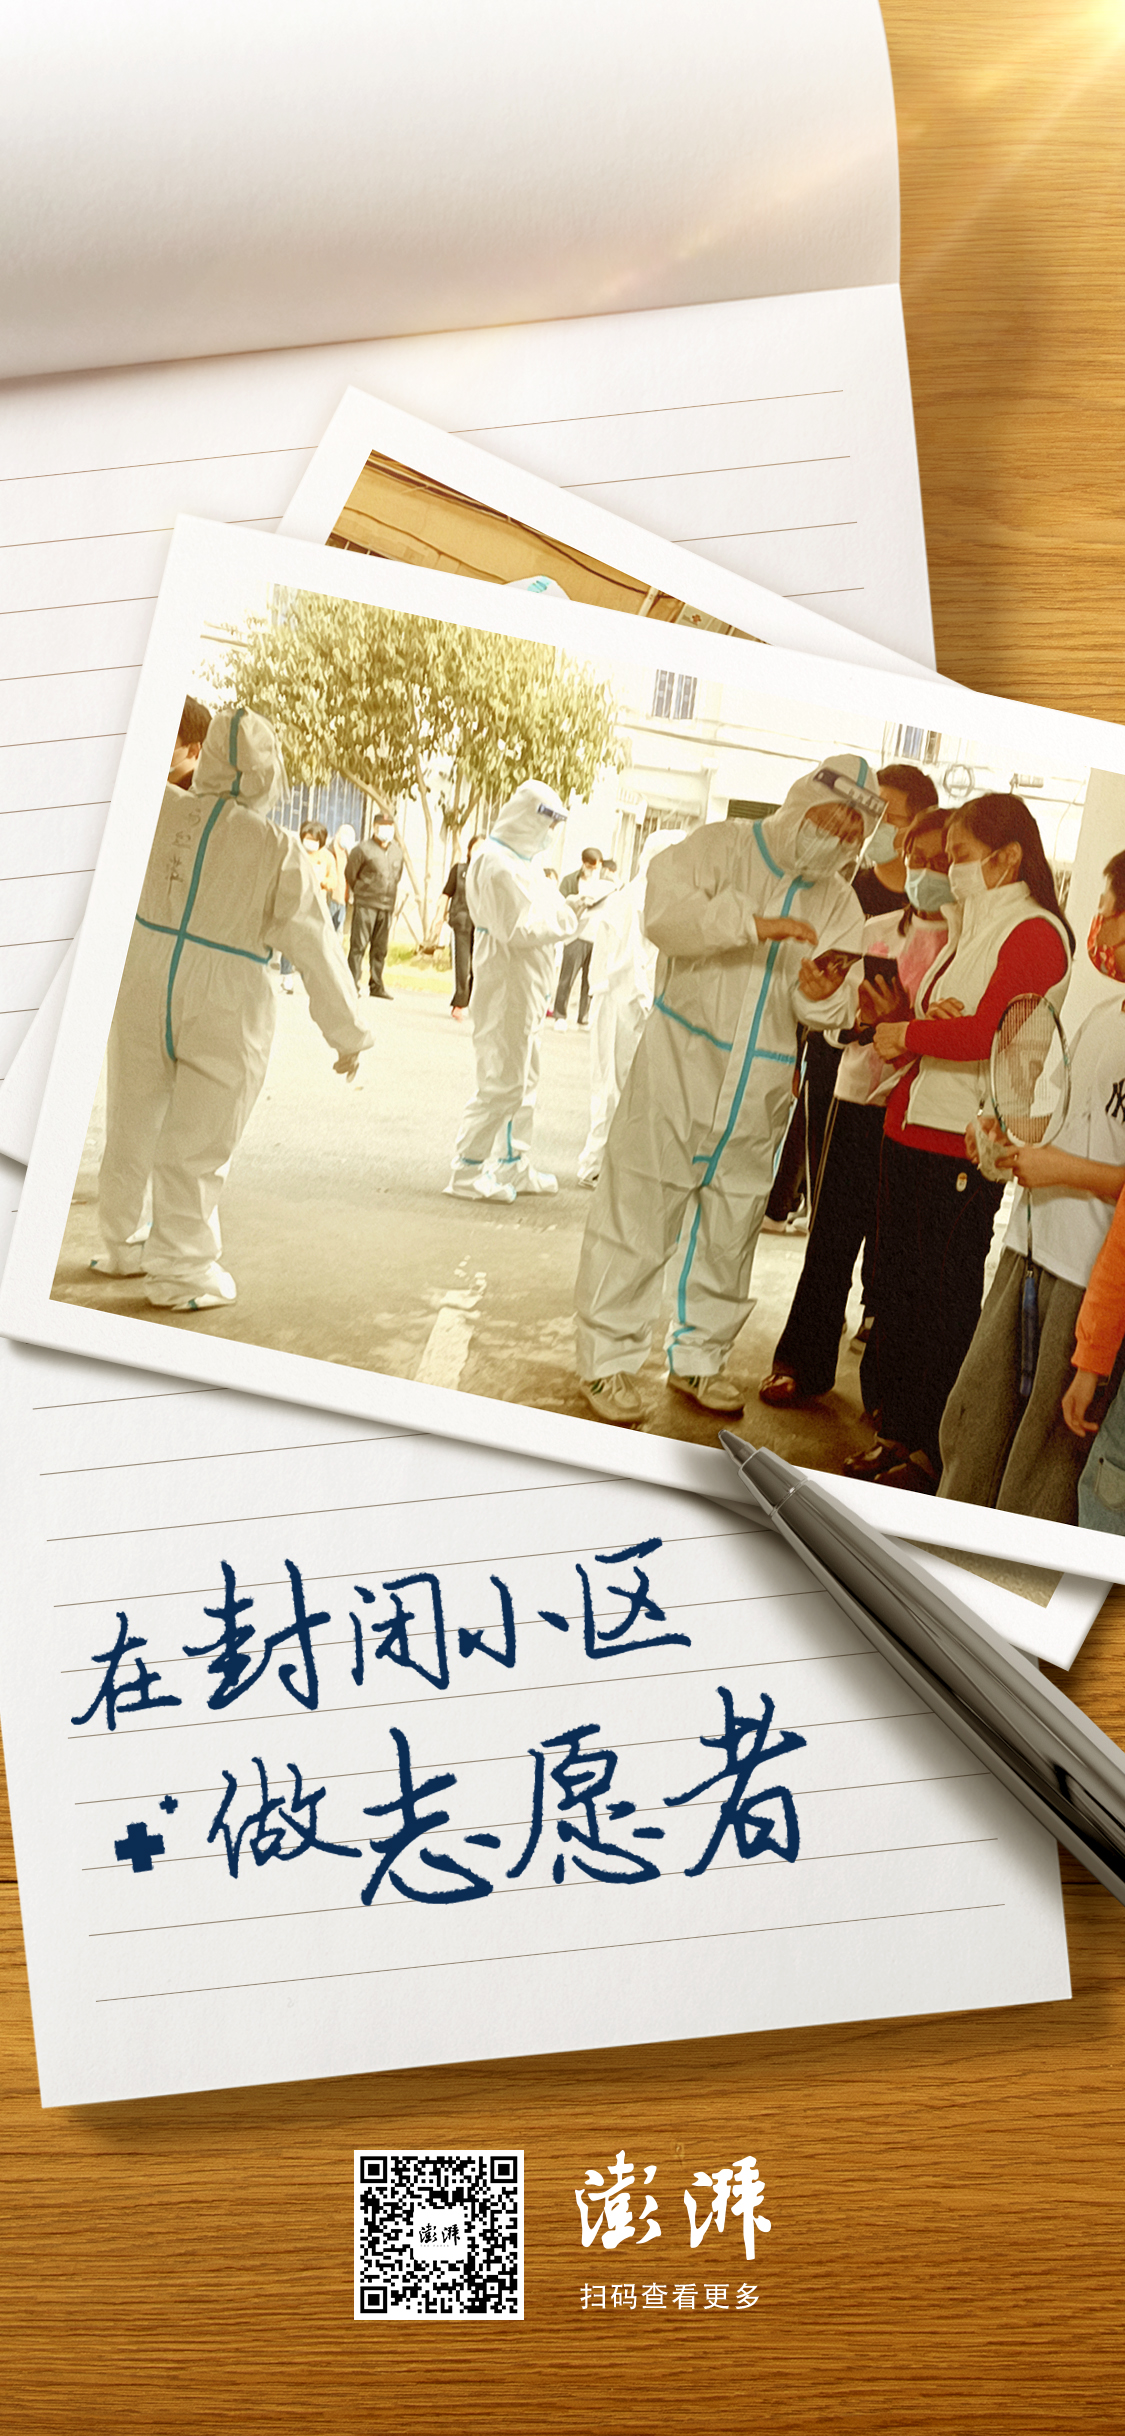 父子上阵、戴着腰托工作……志愿者们守护着上海的封控社区